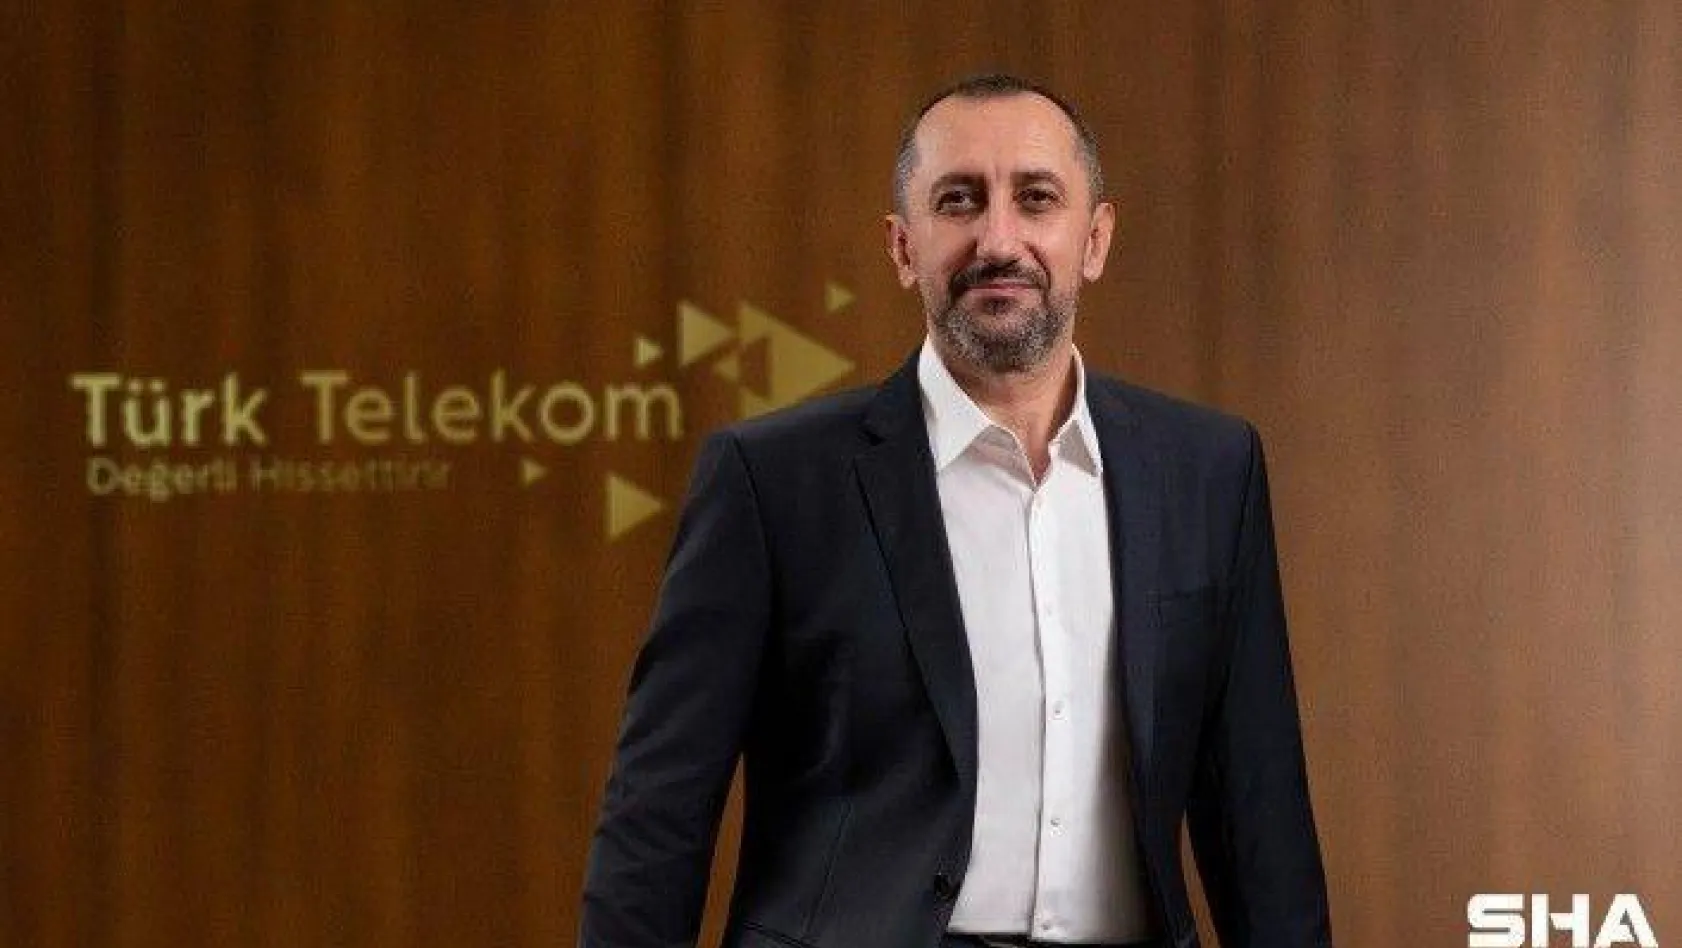 Vestel ve Türk Telekom'dan iş birliği